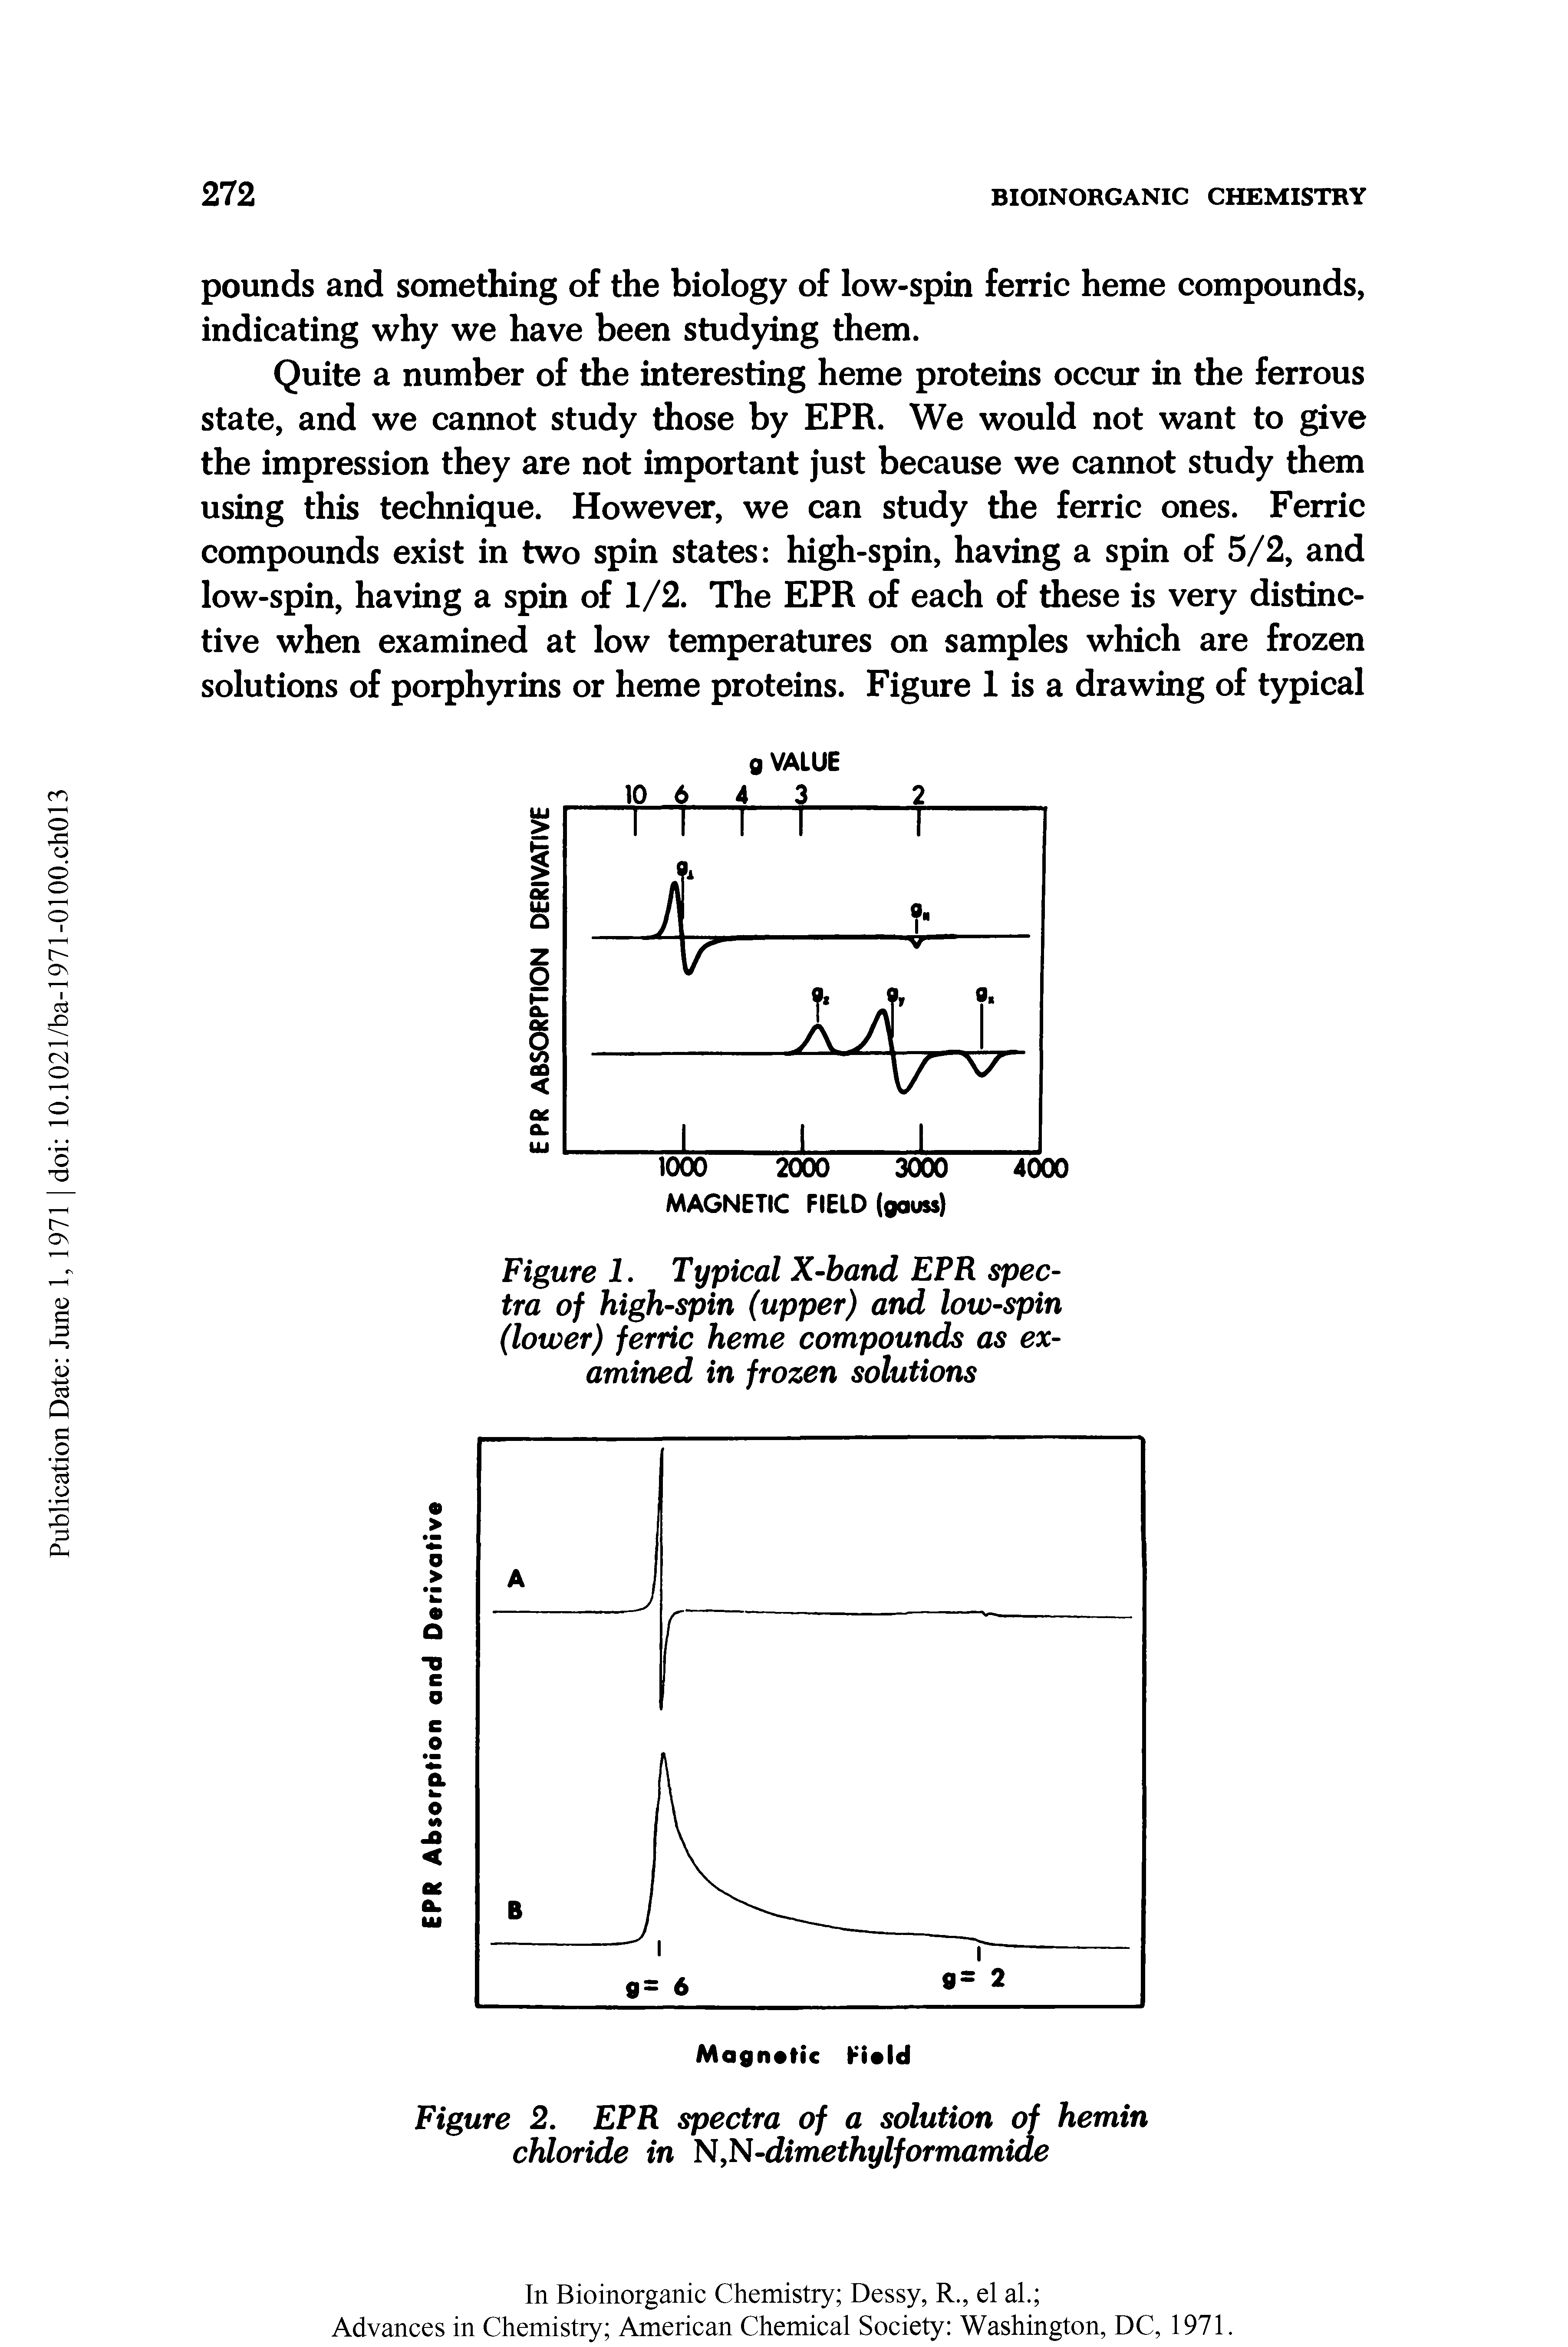 Figure 2. EPR spectra of a solution of hemin chloride in N,N-dimethylformamide...